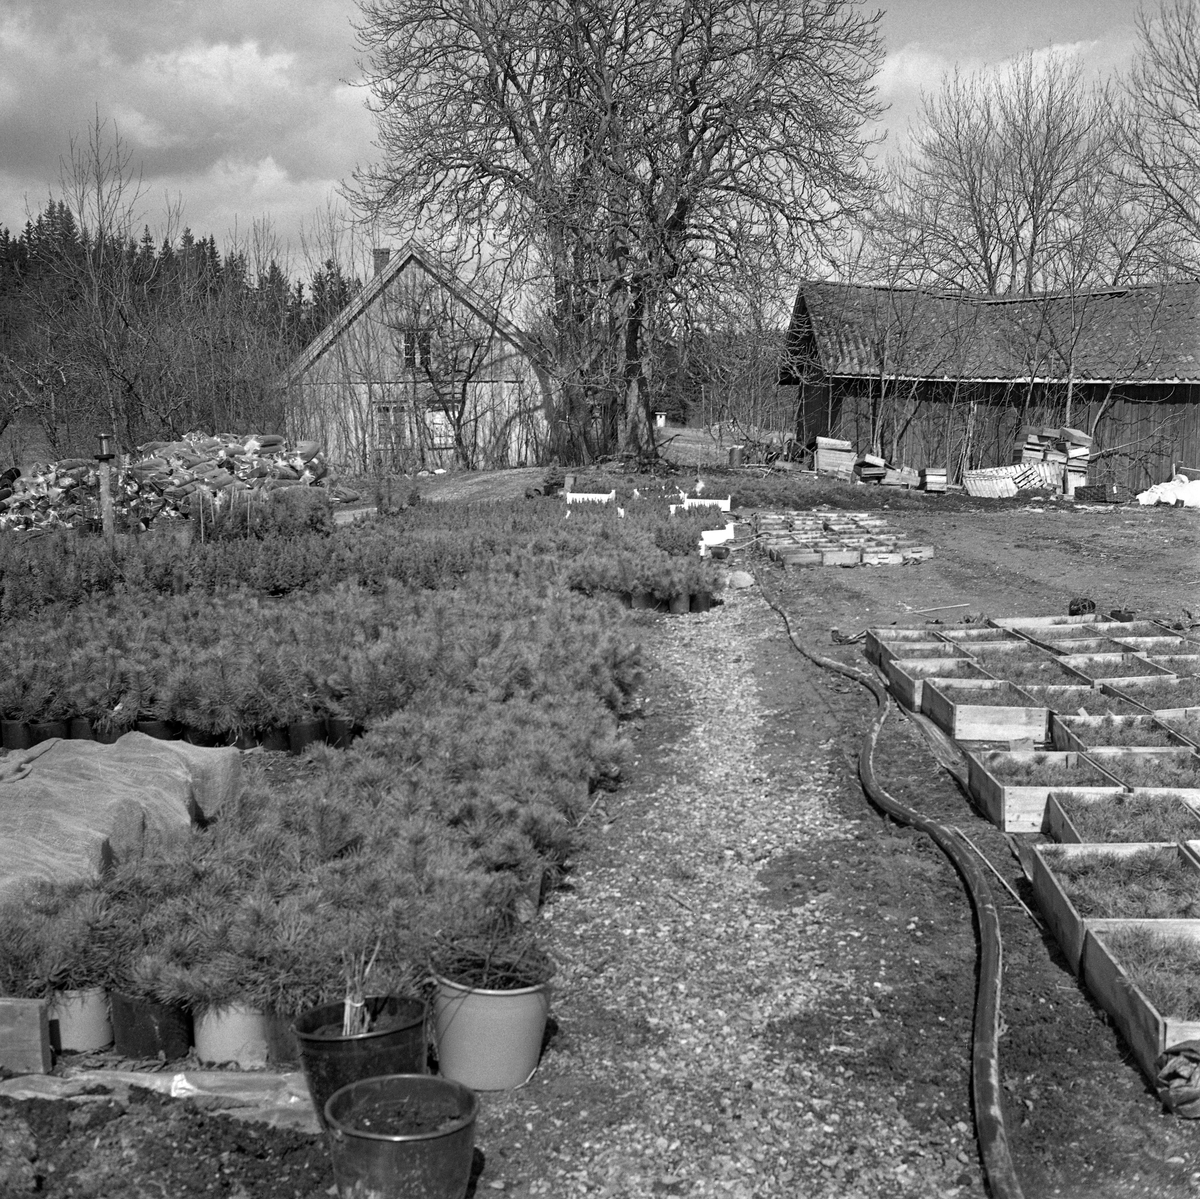 Produksjon av prydtrær i Ski i Akershus, antakelig omkring 1970.  Til venstre i bildet ser vi en del furuliknende planter i stor potter, til høyre sto det noe mindere planter i trekasser.  I bakgrunnen skimtes våningshuset og deler av driftsbygningen på et noe forfallent småbruk.  Dette er sannsynligvis det stedet der Arne Rusten (1923-1988) startet handelsplanteskole i 1969.  Rusten var fra Øyer i Gudbrandsdalen.  Etter å ha gått småbruks- og hagebruksskolen på Valle på Toten, ble han etter hvert student ved hagebrukslinja på Norges landbrukshøgskole på Ås i Akershus.  Etter avlagt eksamen der arbeidet Rusten et par år ved NLHs Institutt for planteskoledrift.  I midten av 1950-åra var den unge hagebrukskandidaten et par år i USA, hvor han praktiserte ved forskjellige planteskoler.  Etter hjemkomsten ble han igjen knyttet til planteskolemiljøet ved Landbrukshøgskolen.  I perioden 1961-1969 var Rusten planteskolekonsulent for Det norske Skogselskaps planteskoler, og i 1968 gav han ut boka «Produksjon av skogplanter».  I 1969 etablerte Rusten en handelsplanteskole med prydtrær som hovedprodukt på Nordby i Ski.  Fotografiet kan være fra dette anlegget.